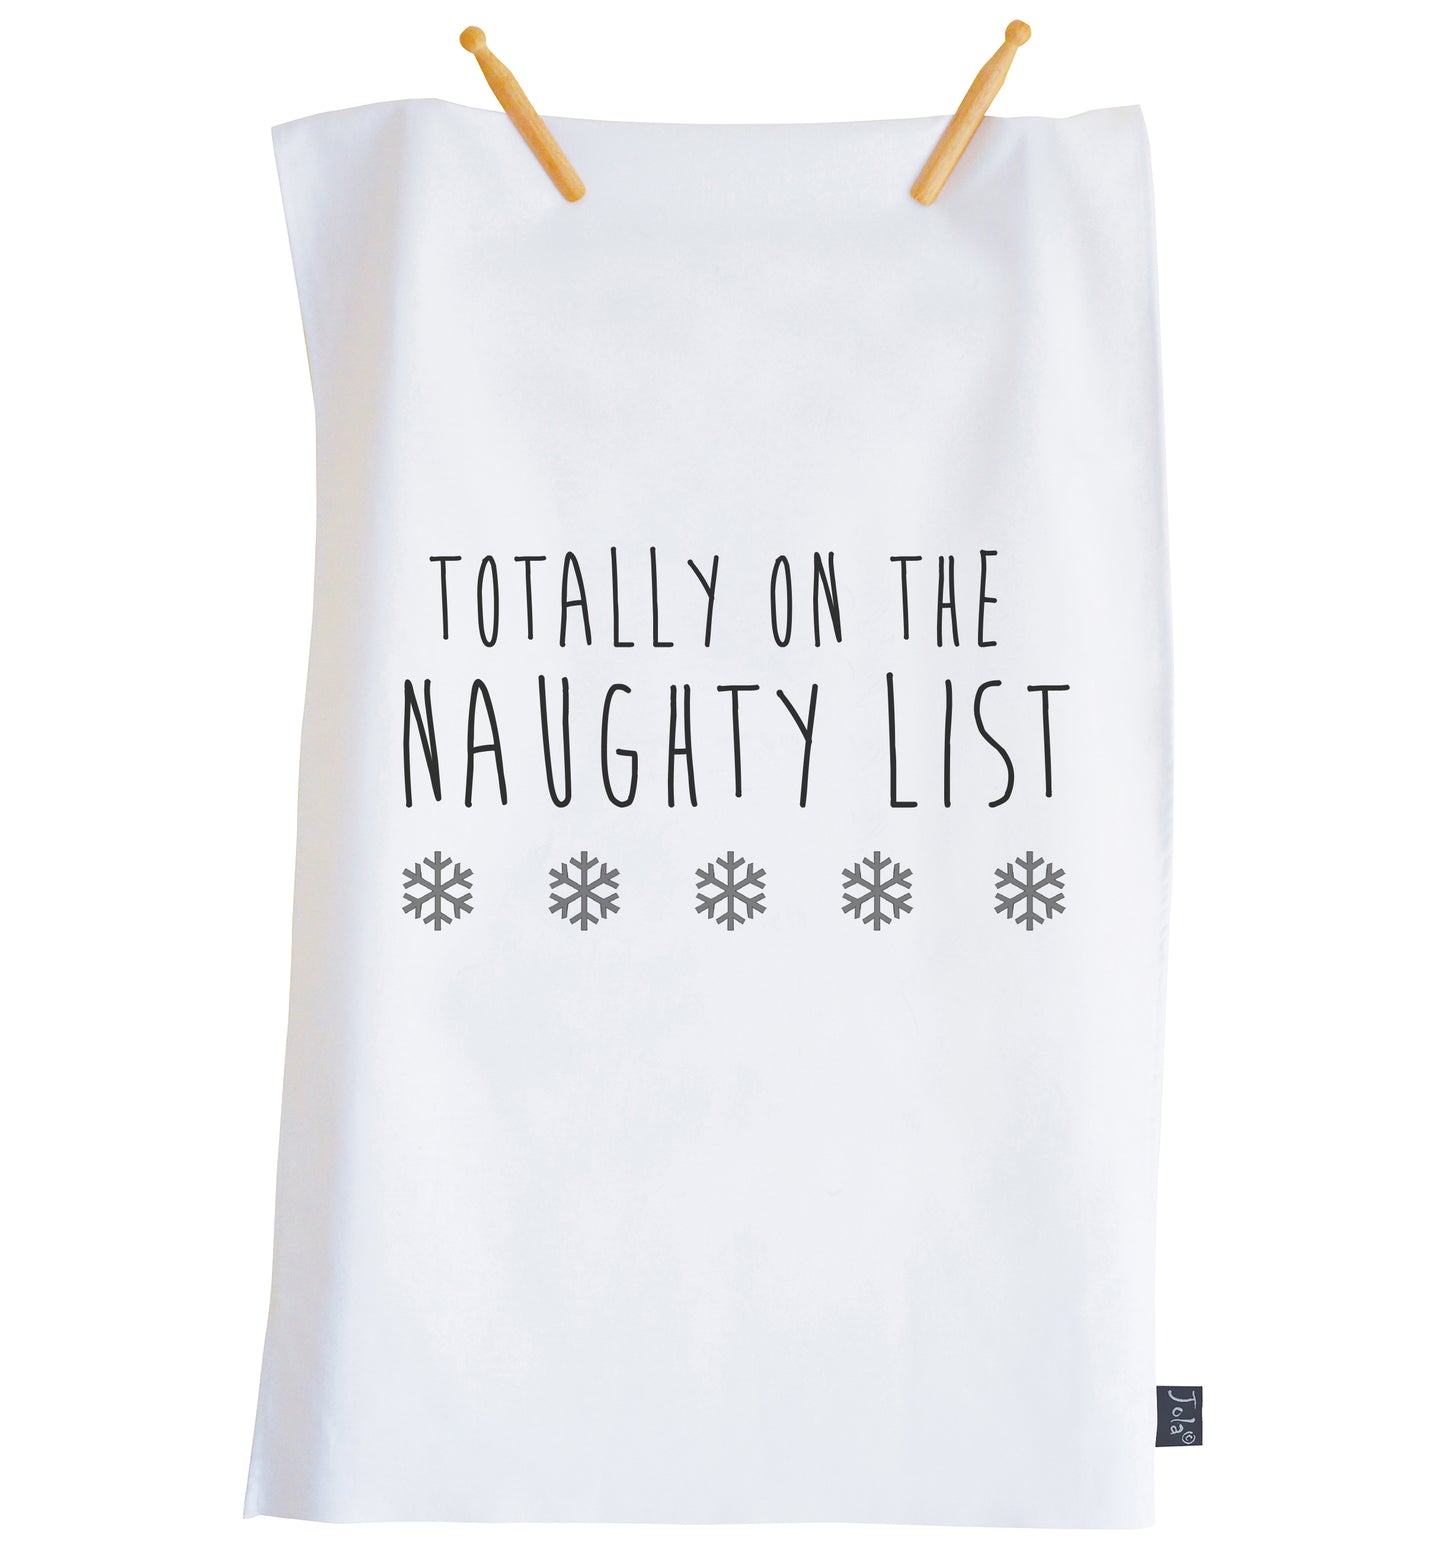 Totally on the Naughty List Christmas tea towel